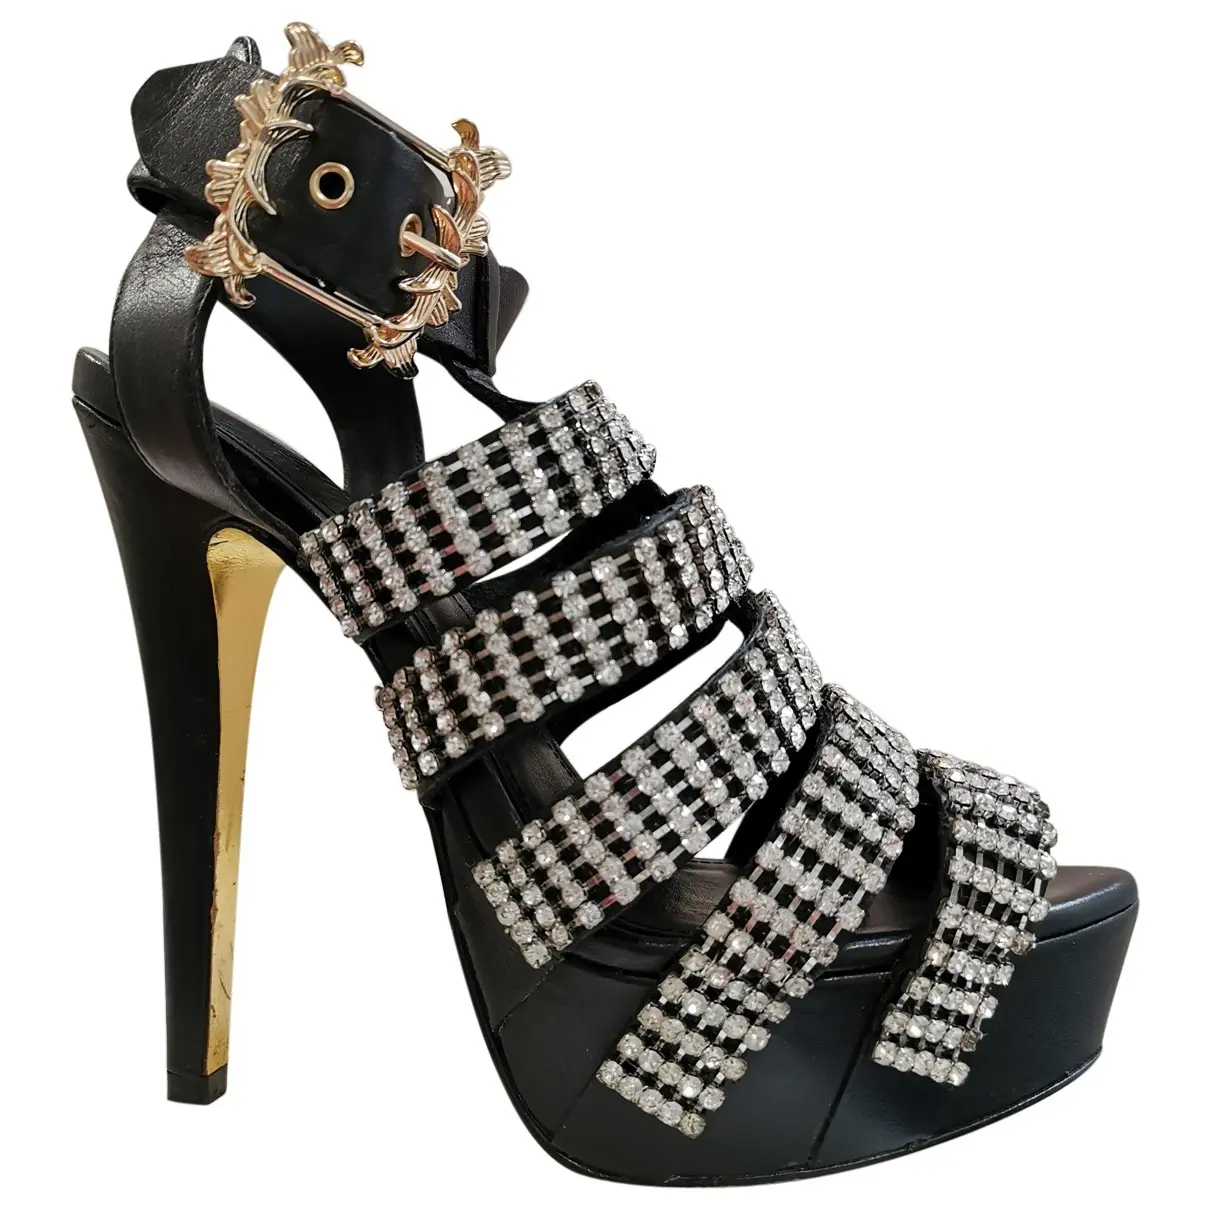 Leather heels Anna Dello Russo Pour H&M